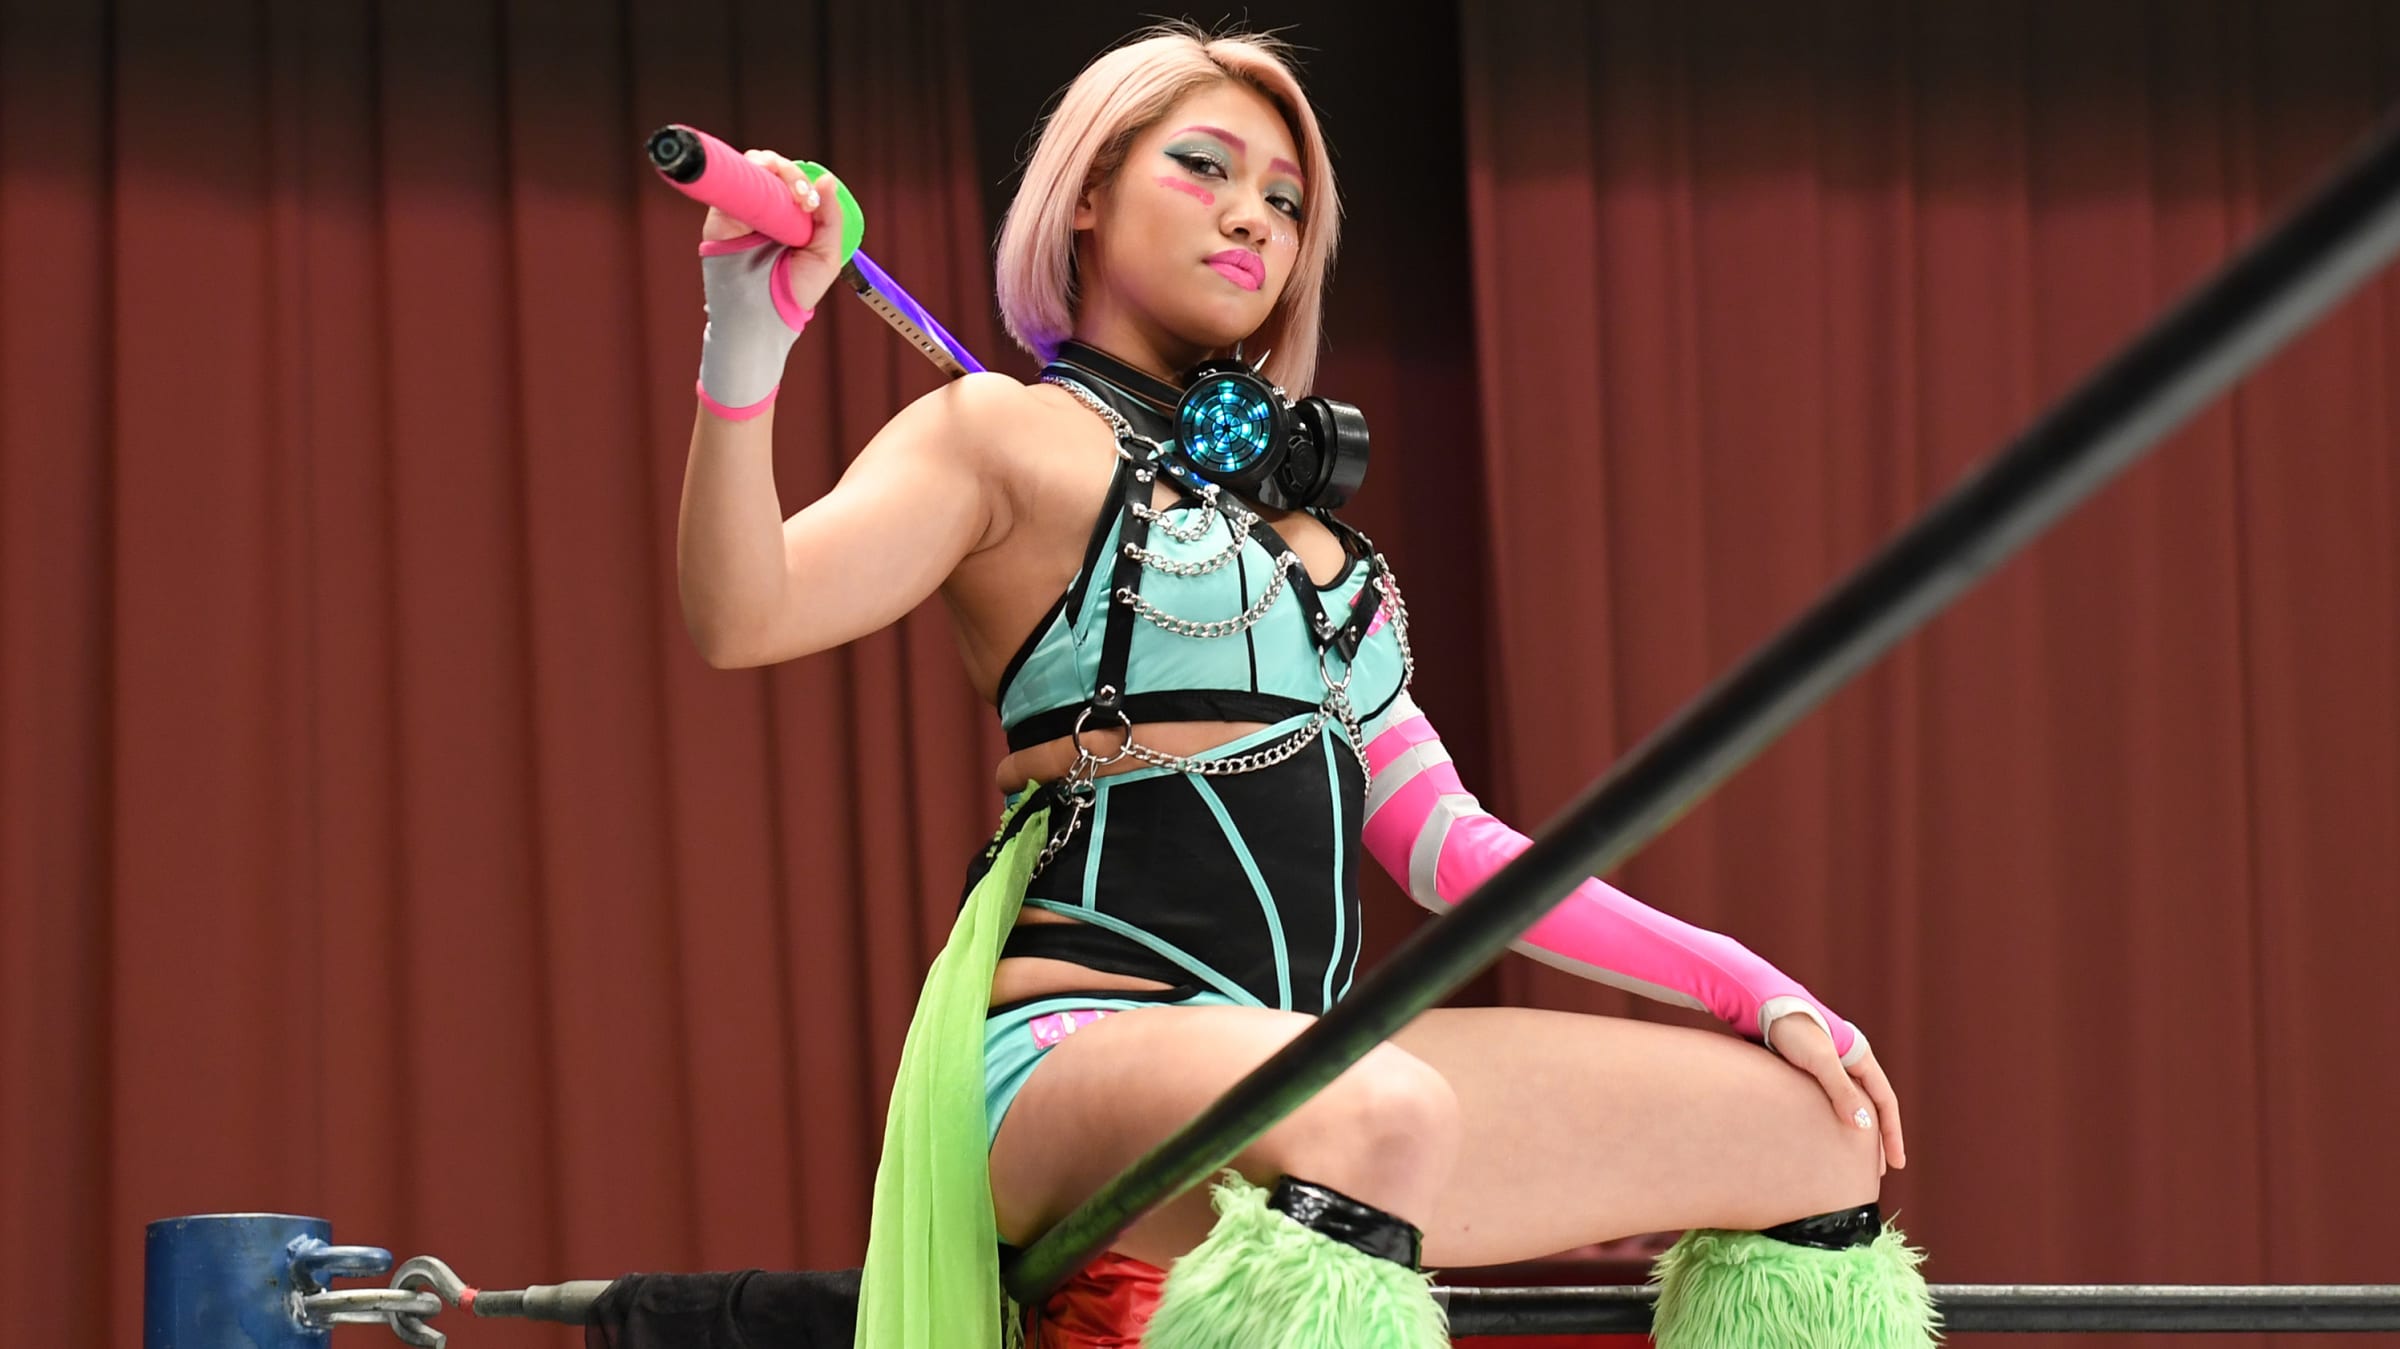 Japanese Wrestler Hana Kimura Wouldnt Bow to Men, But Trolls Took Her Down